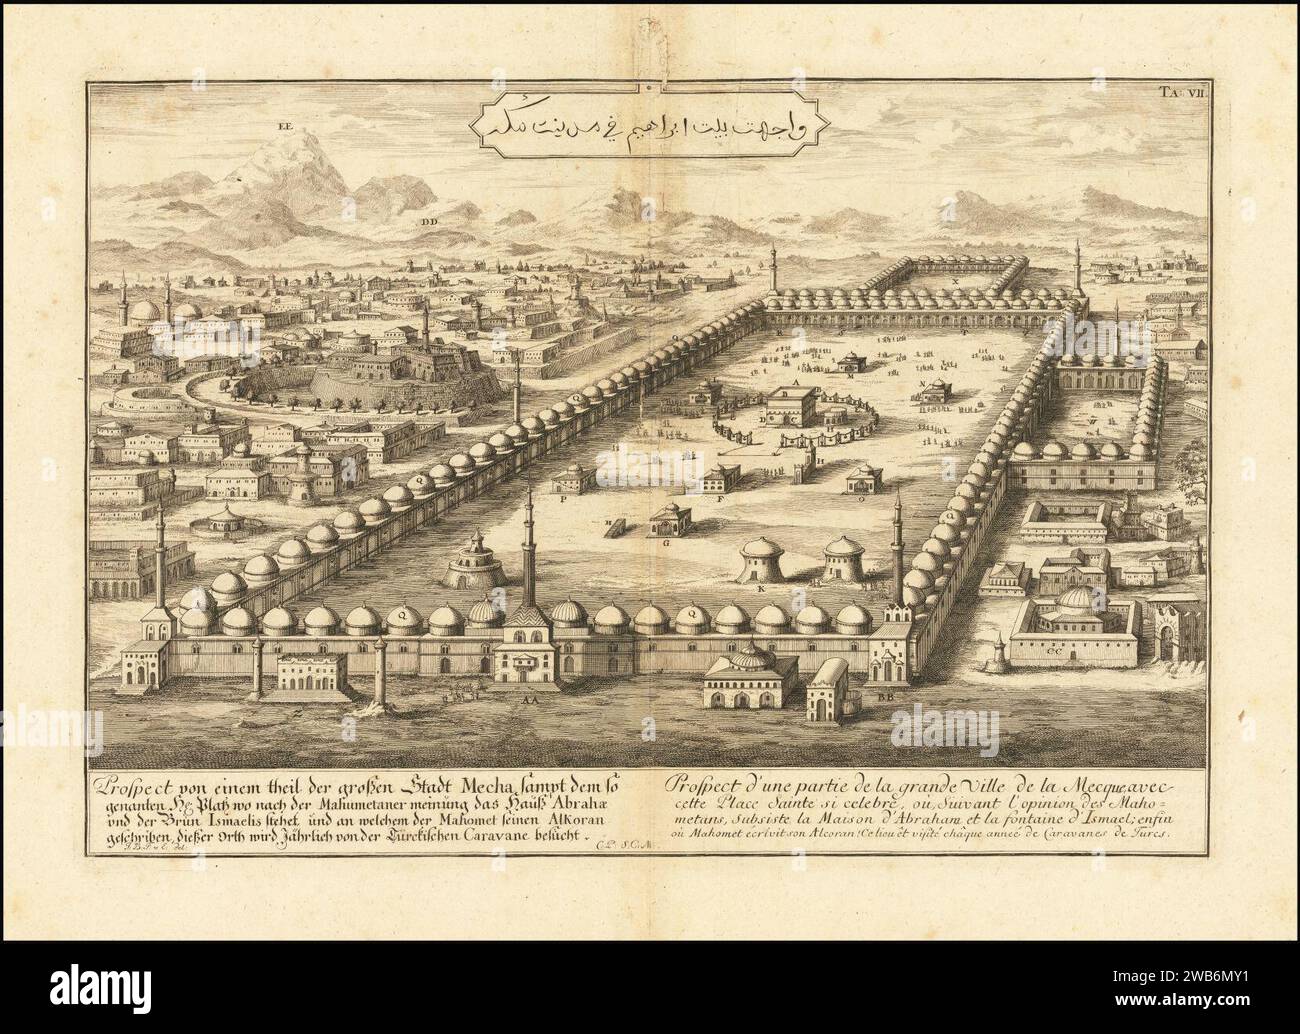 1725 view of Mecca by Johann Bernhard Fischer von Erlach. Stock Photo